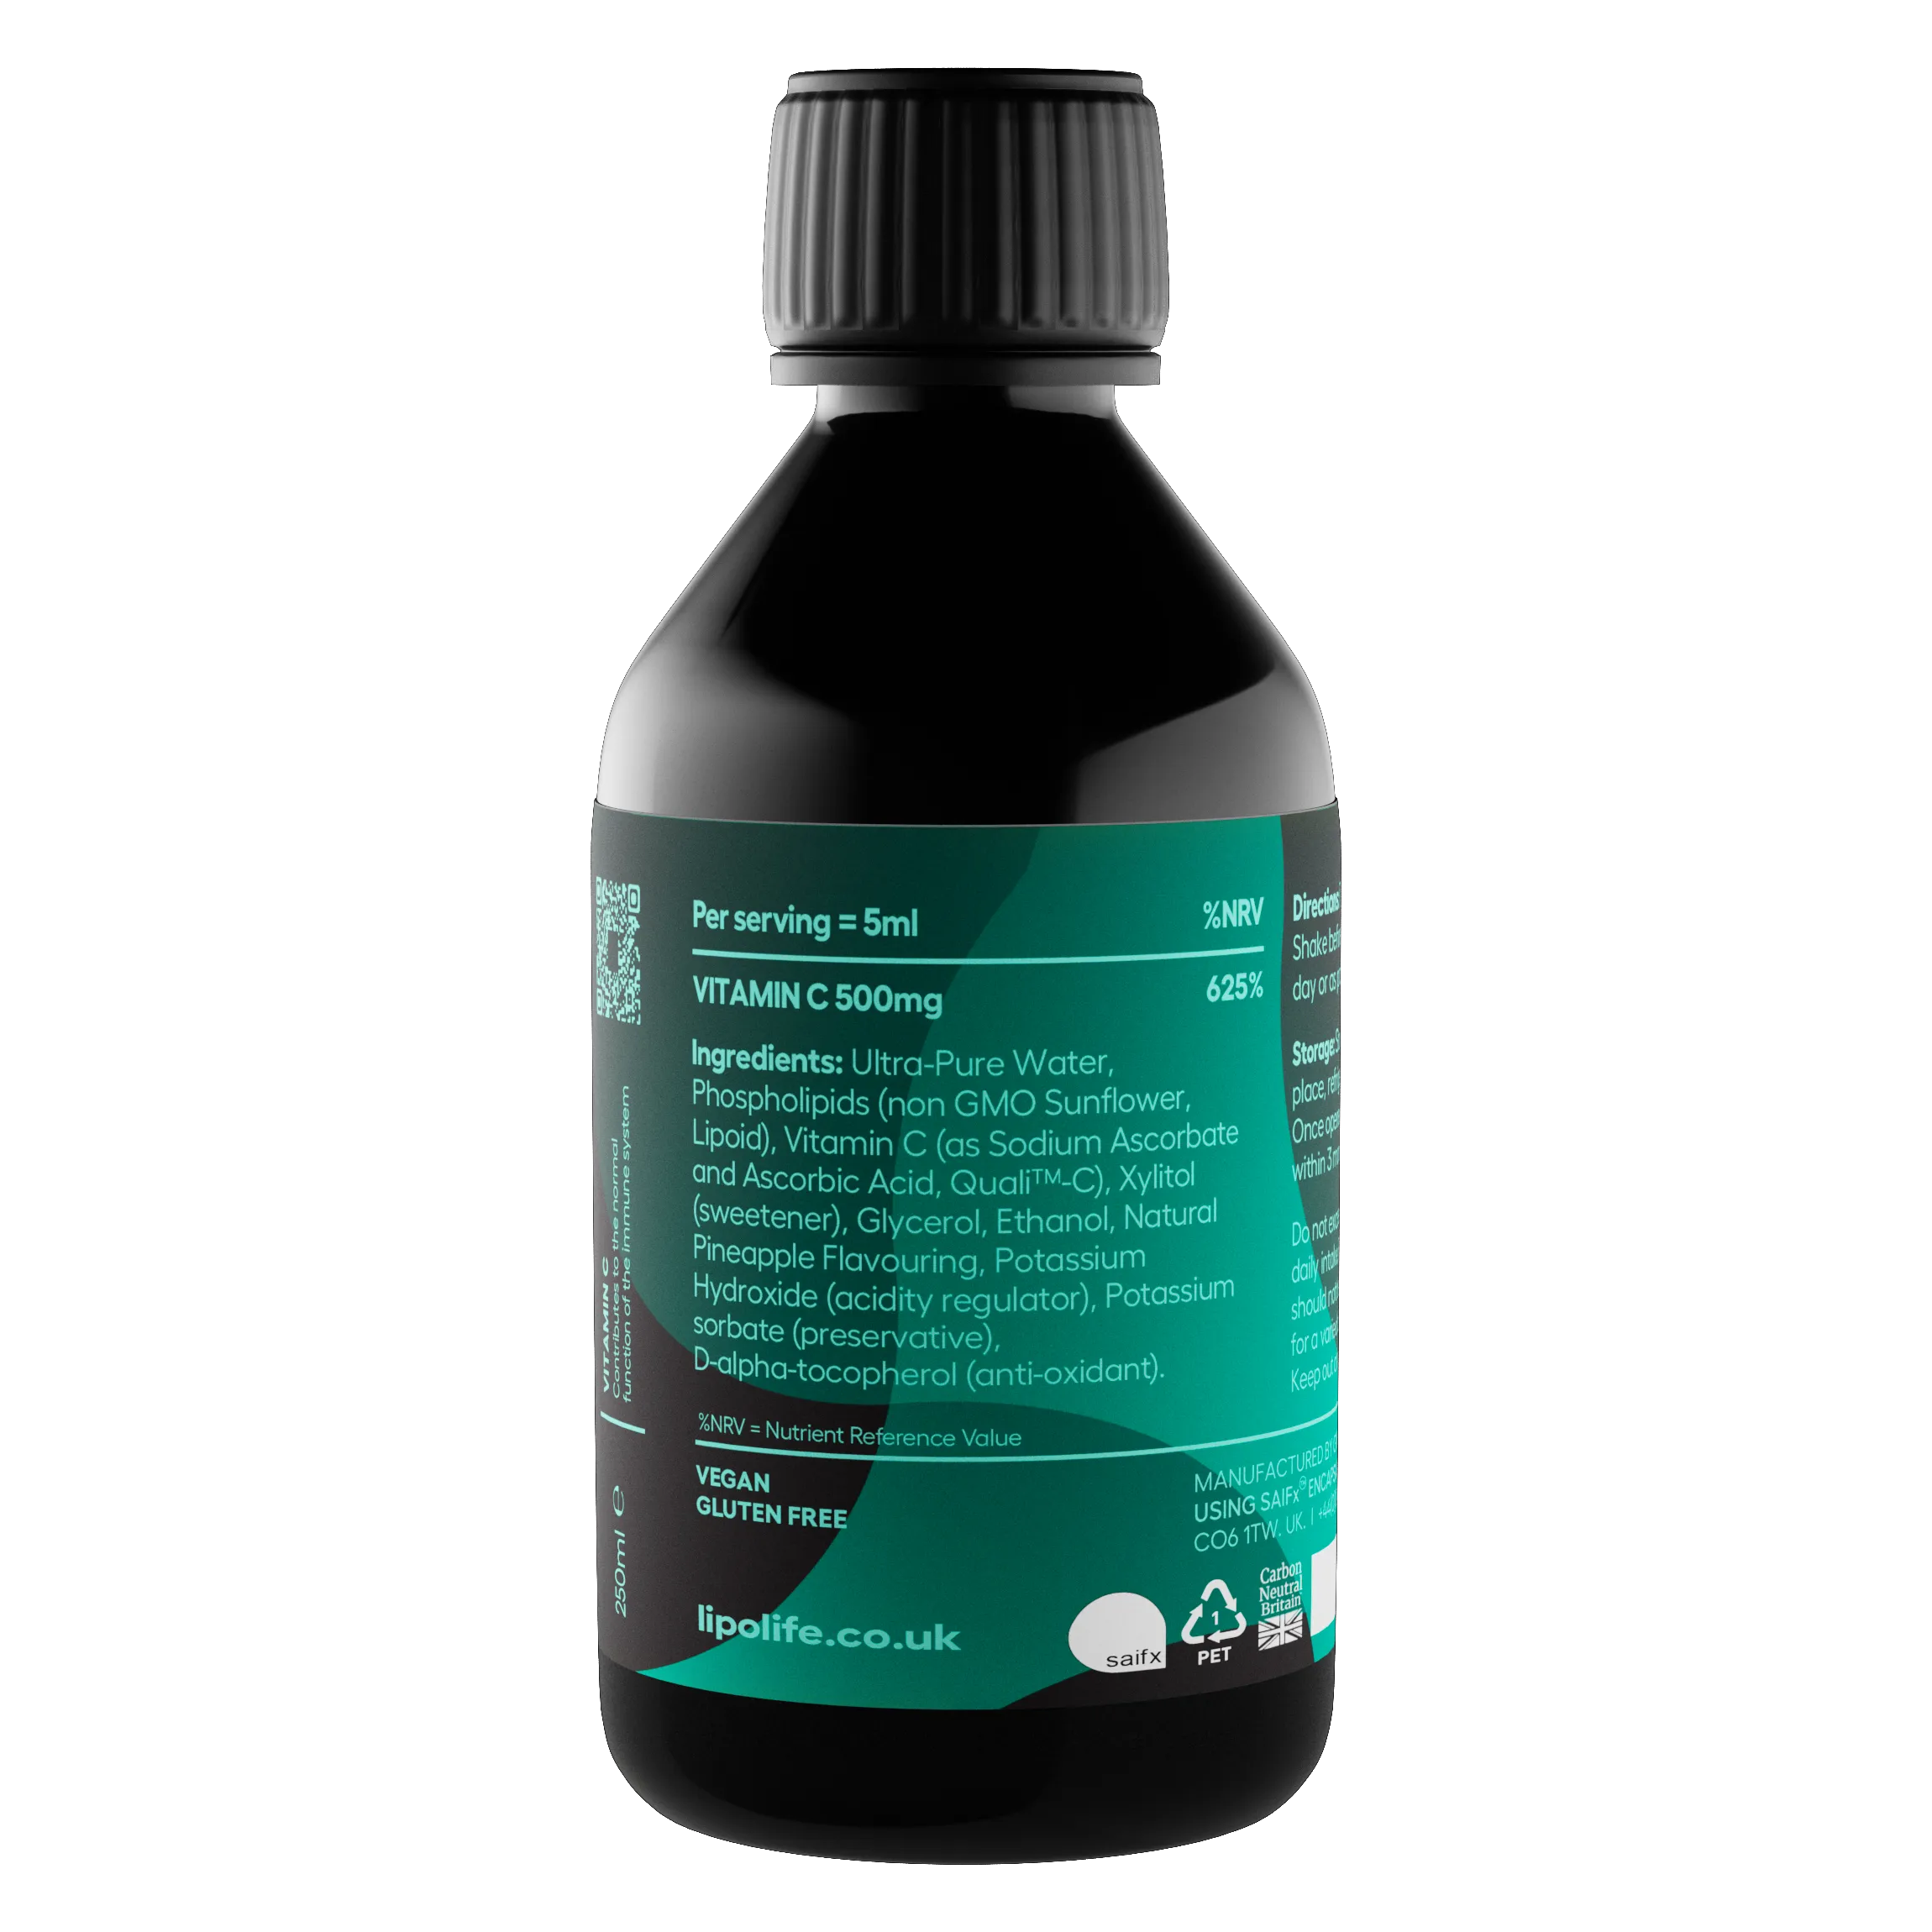 LVC4 - течен и липозомен витамин C - ананас, 240 мл.